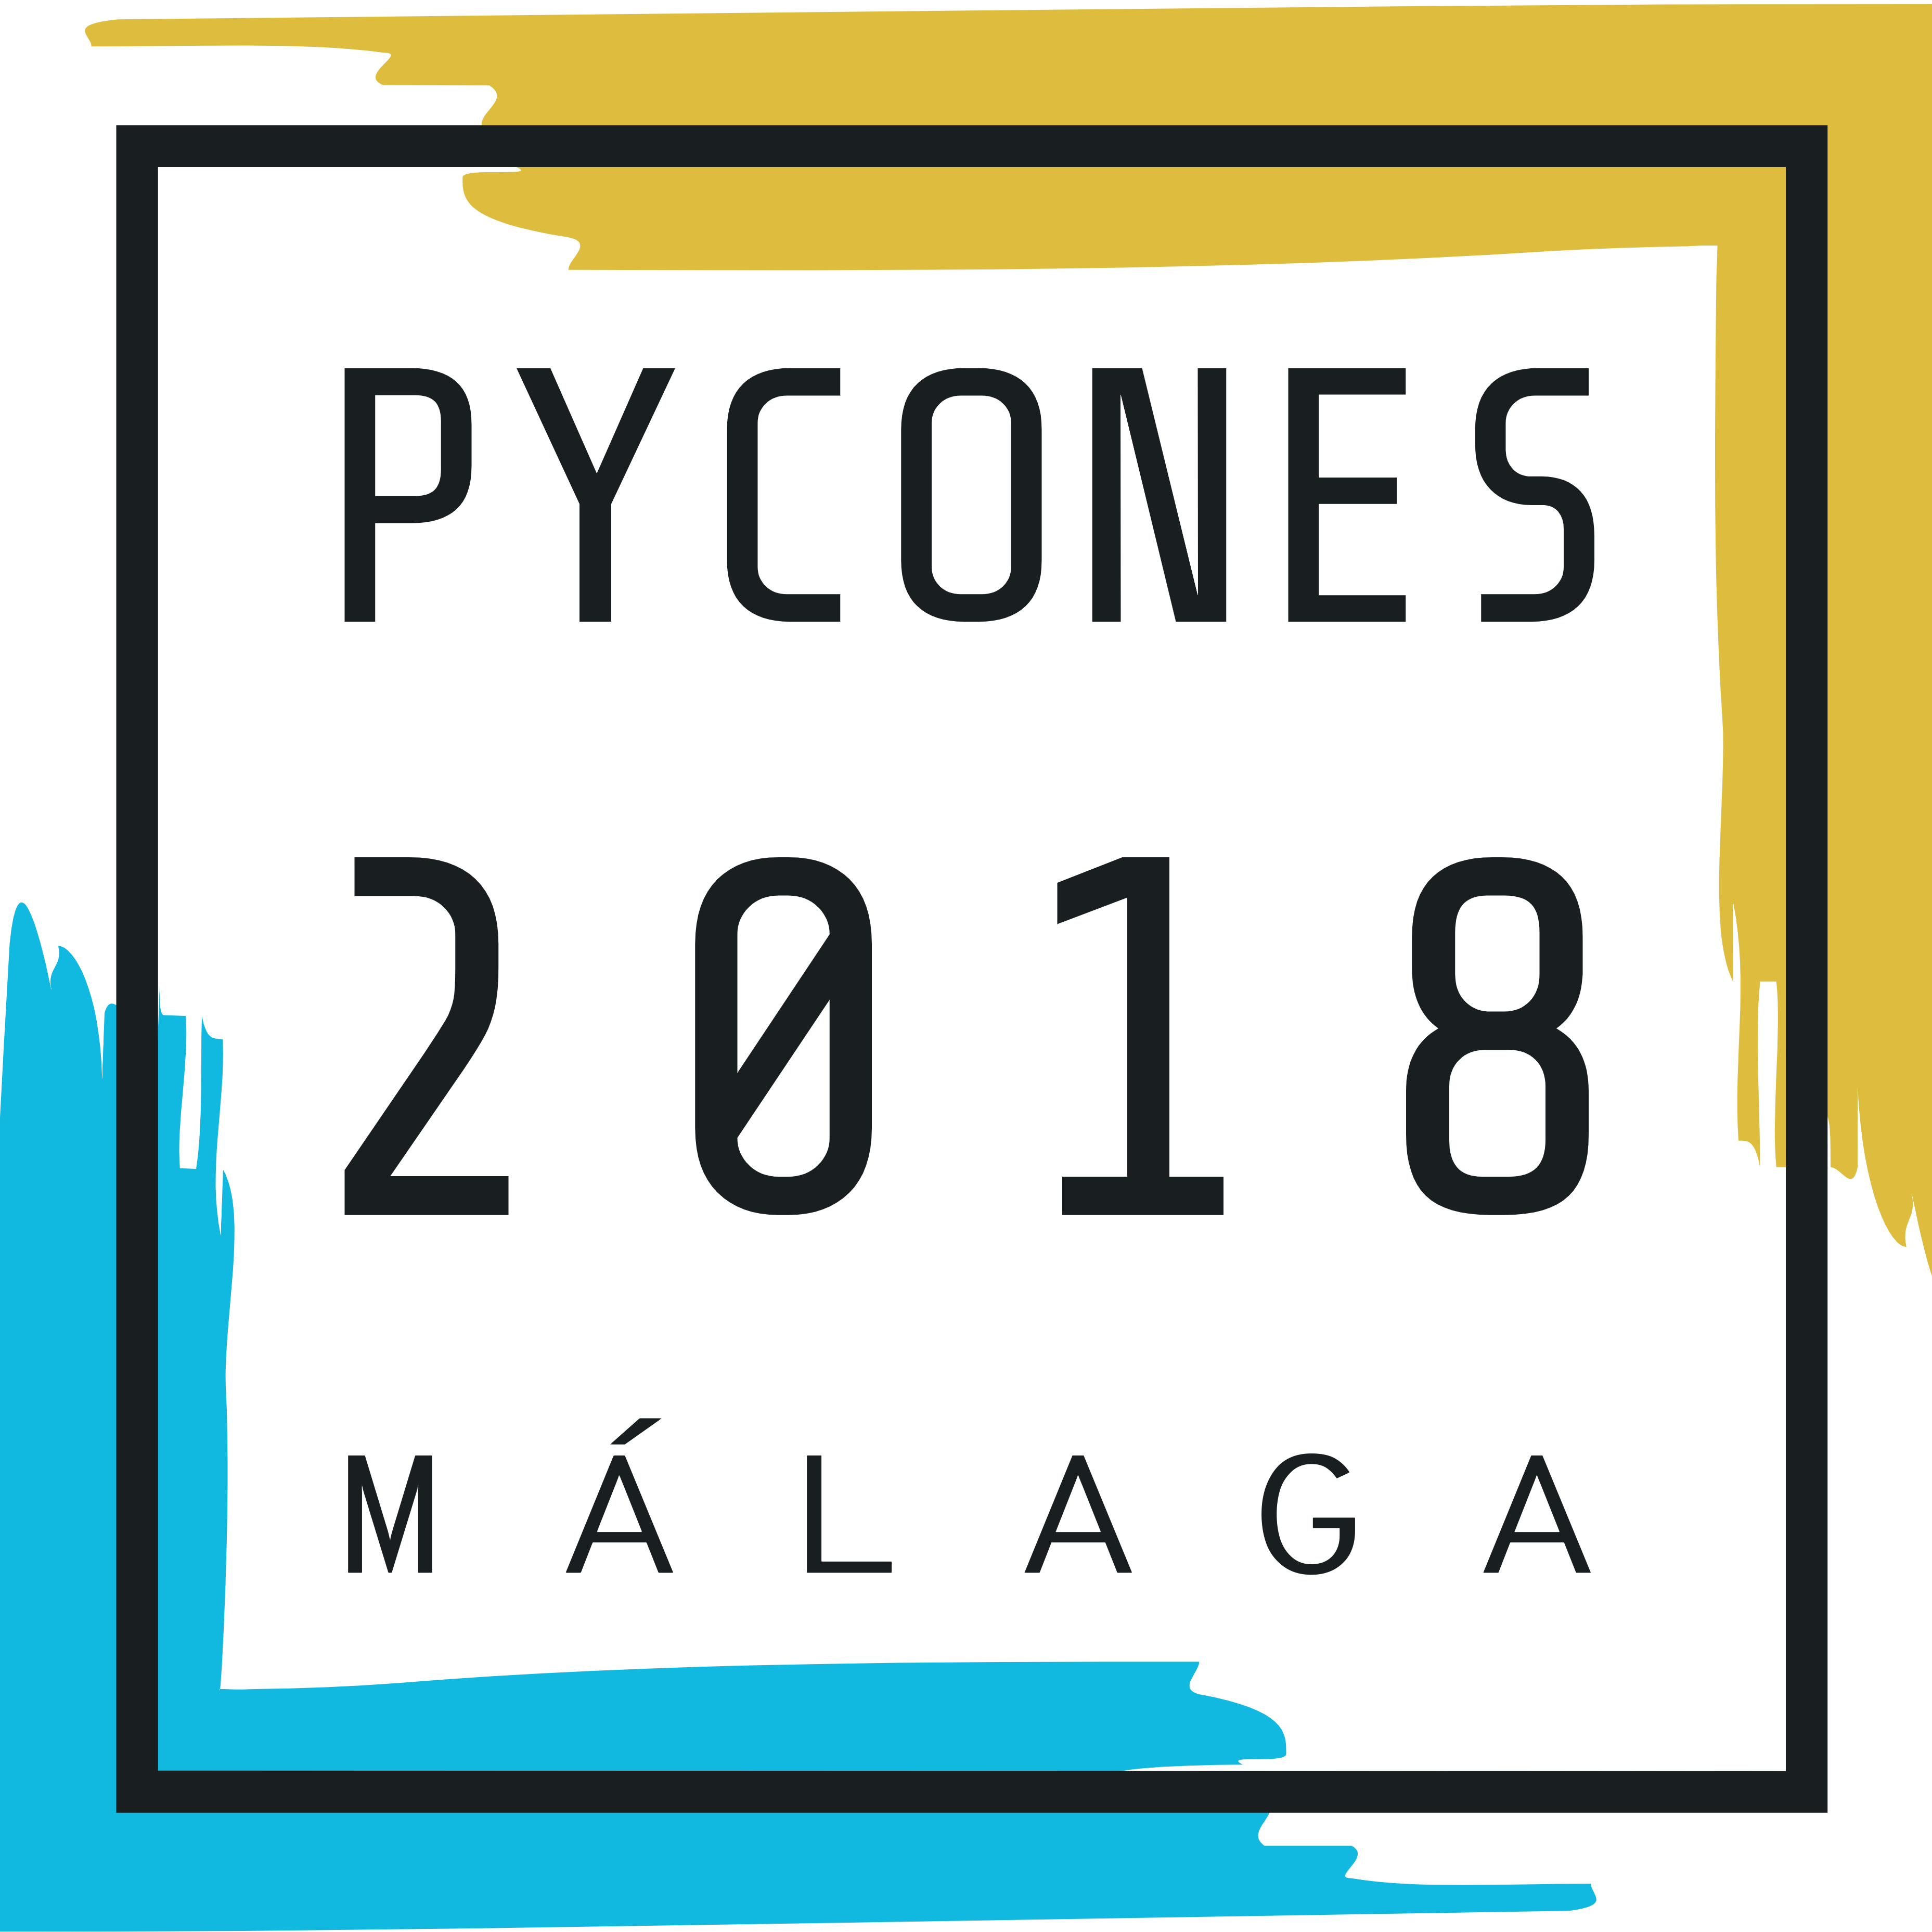 PyConES 2018 - Málaga